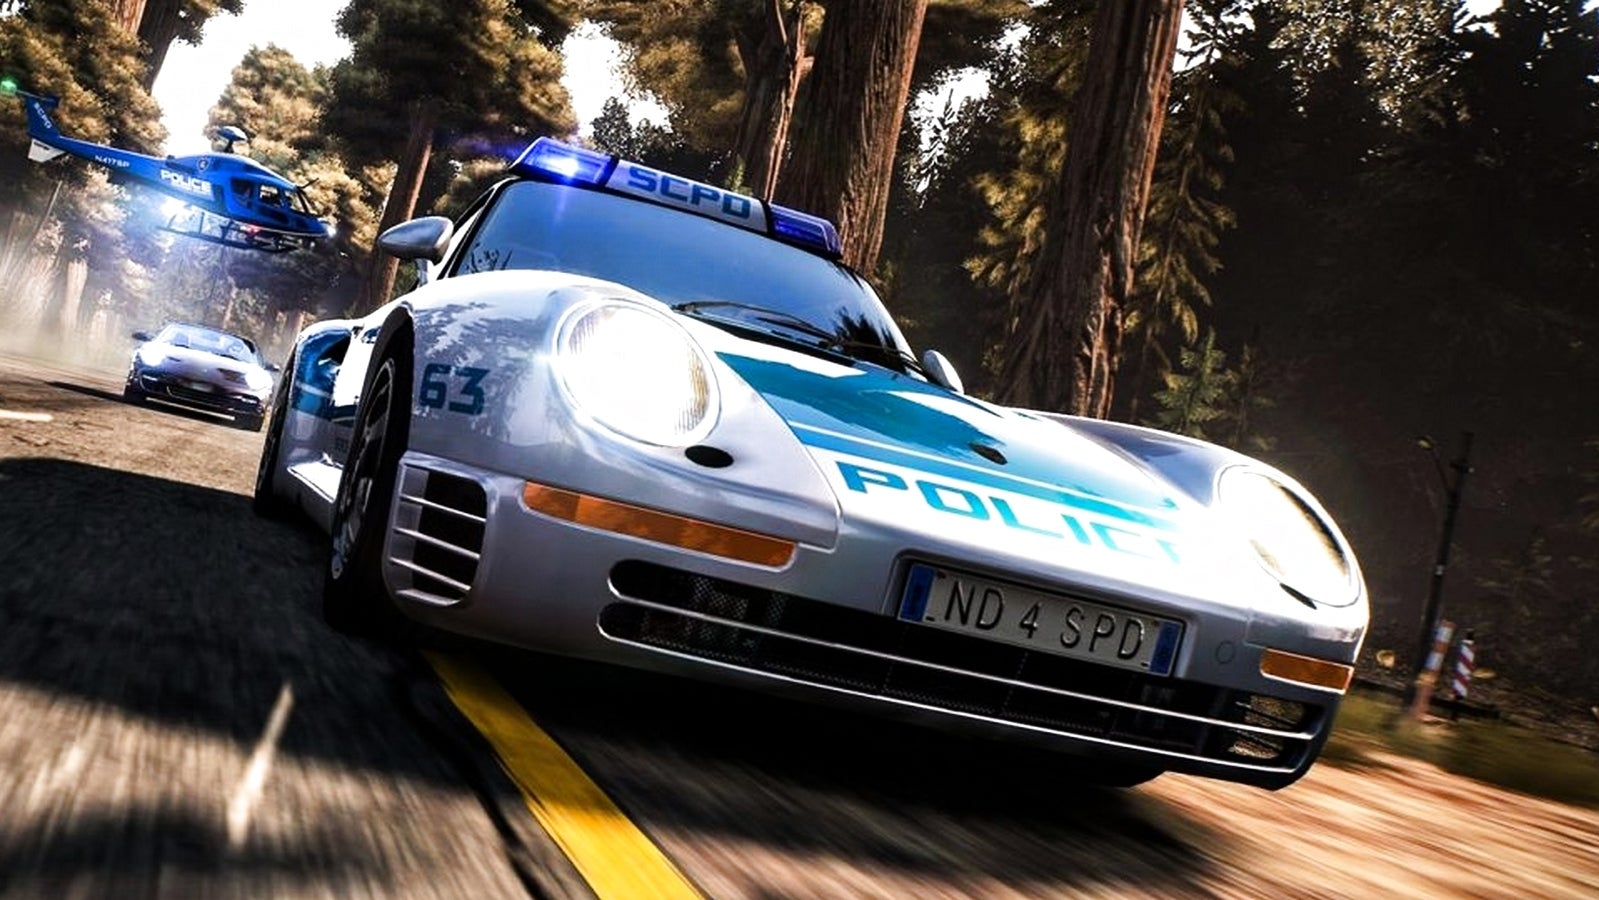 Bilder zu Need for Speed: Hot Pursuit Remastered angekündigt, erscheint am 6. November 2020